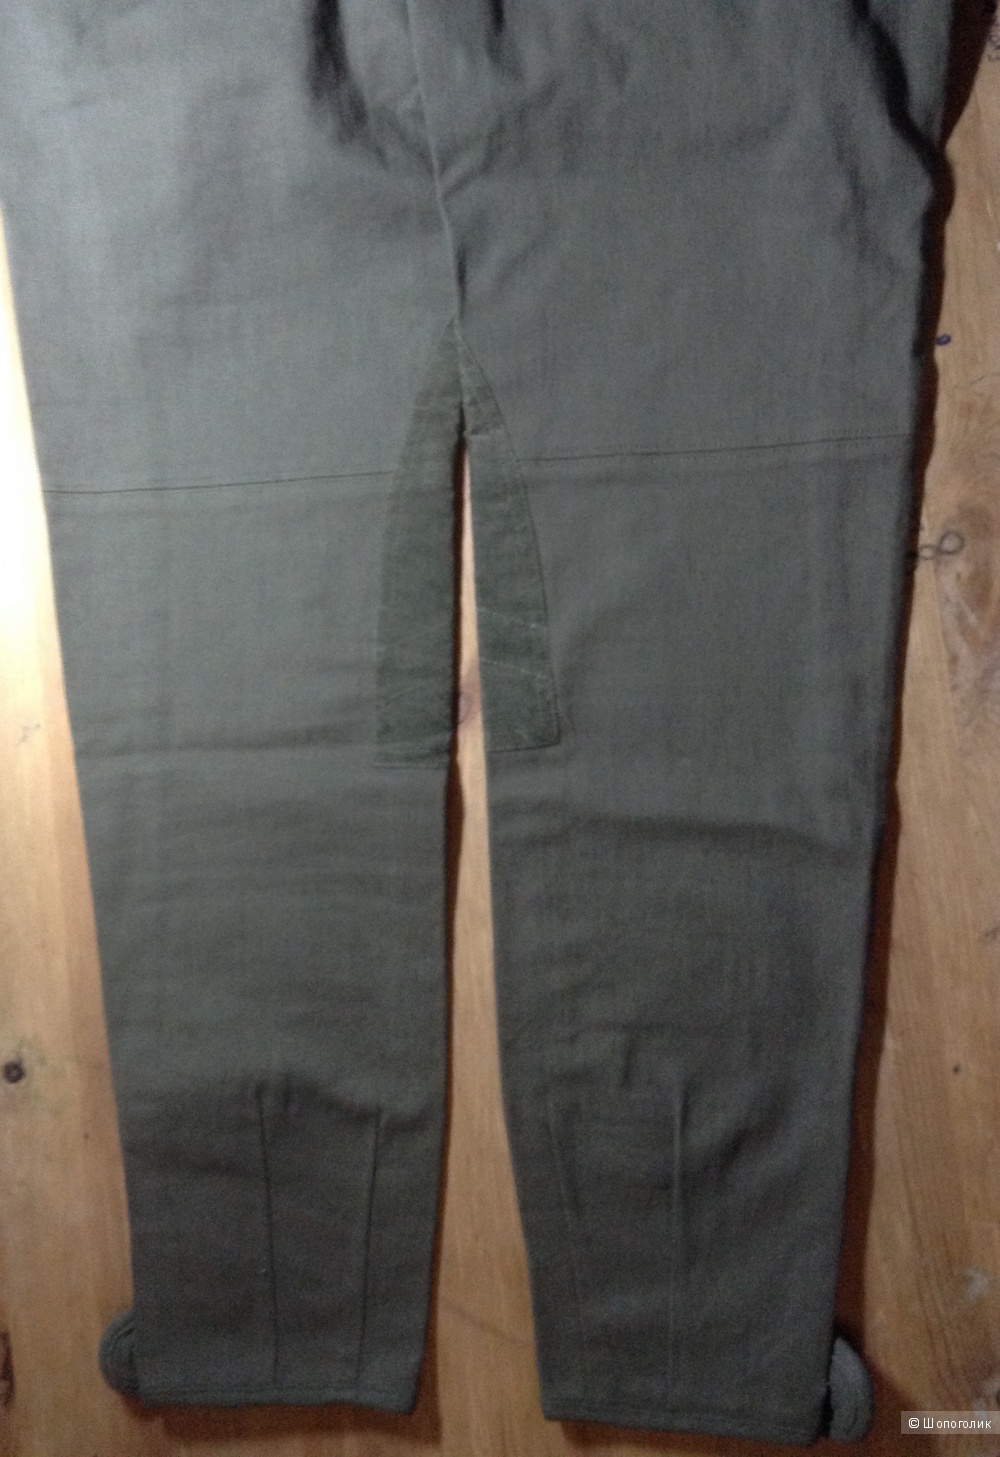 Зауженные брюки KOOKAI новые,42 размер